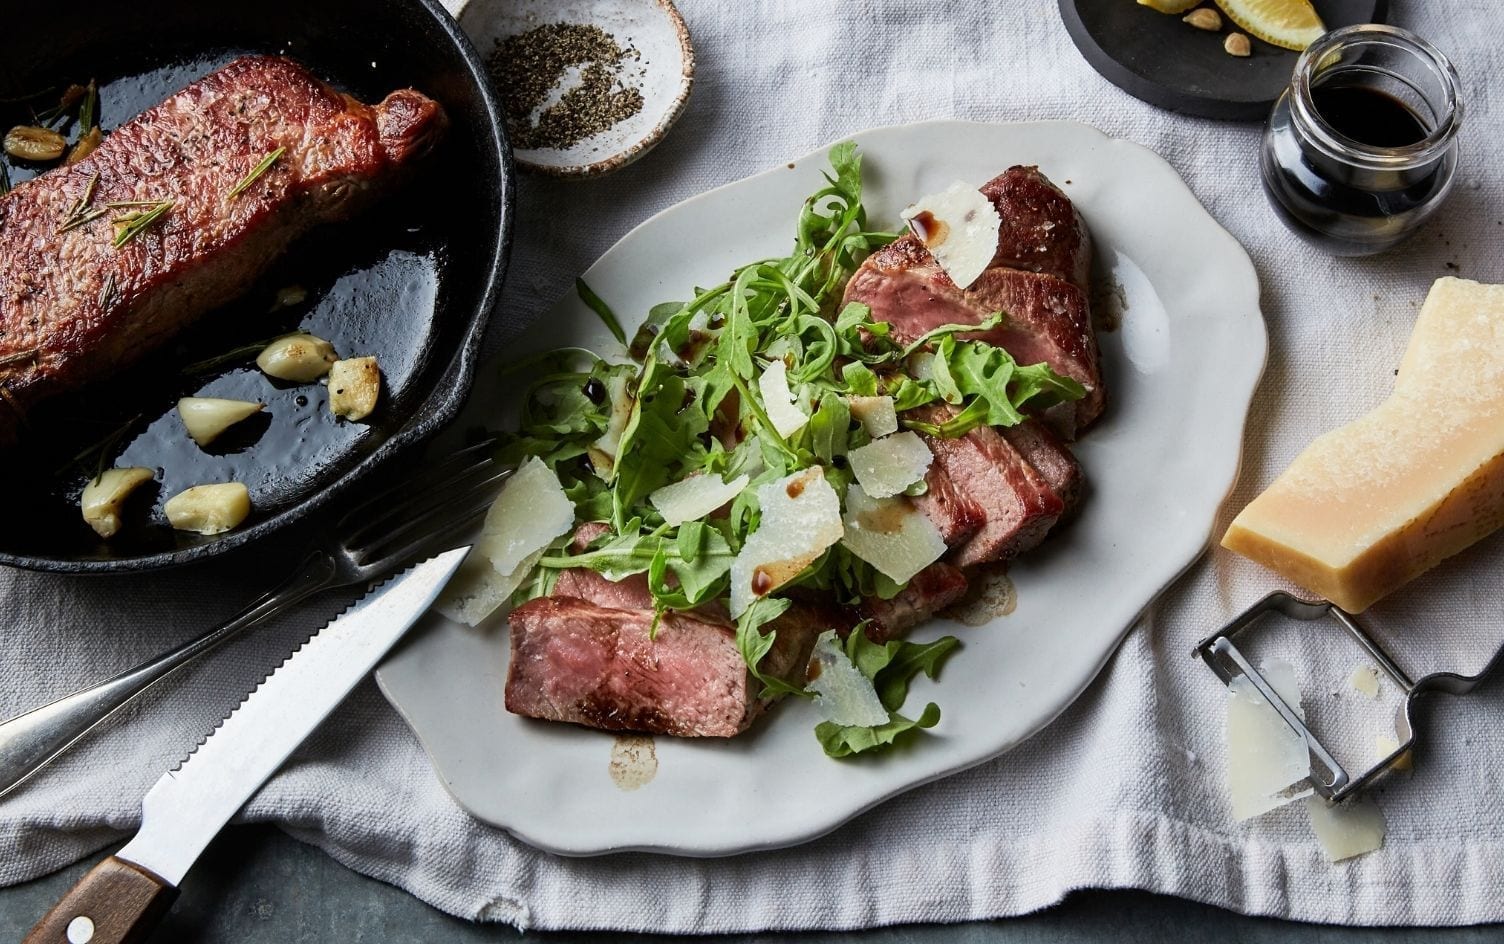 Tuscan Steak With Arugula Salad